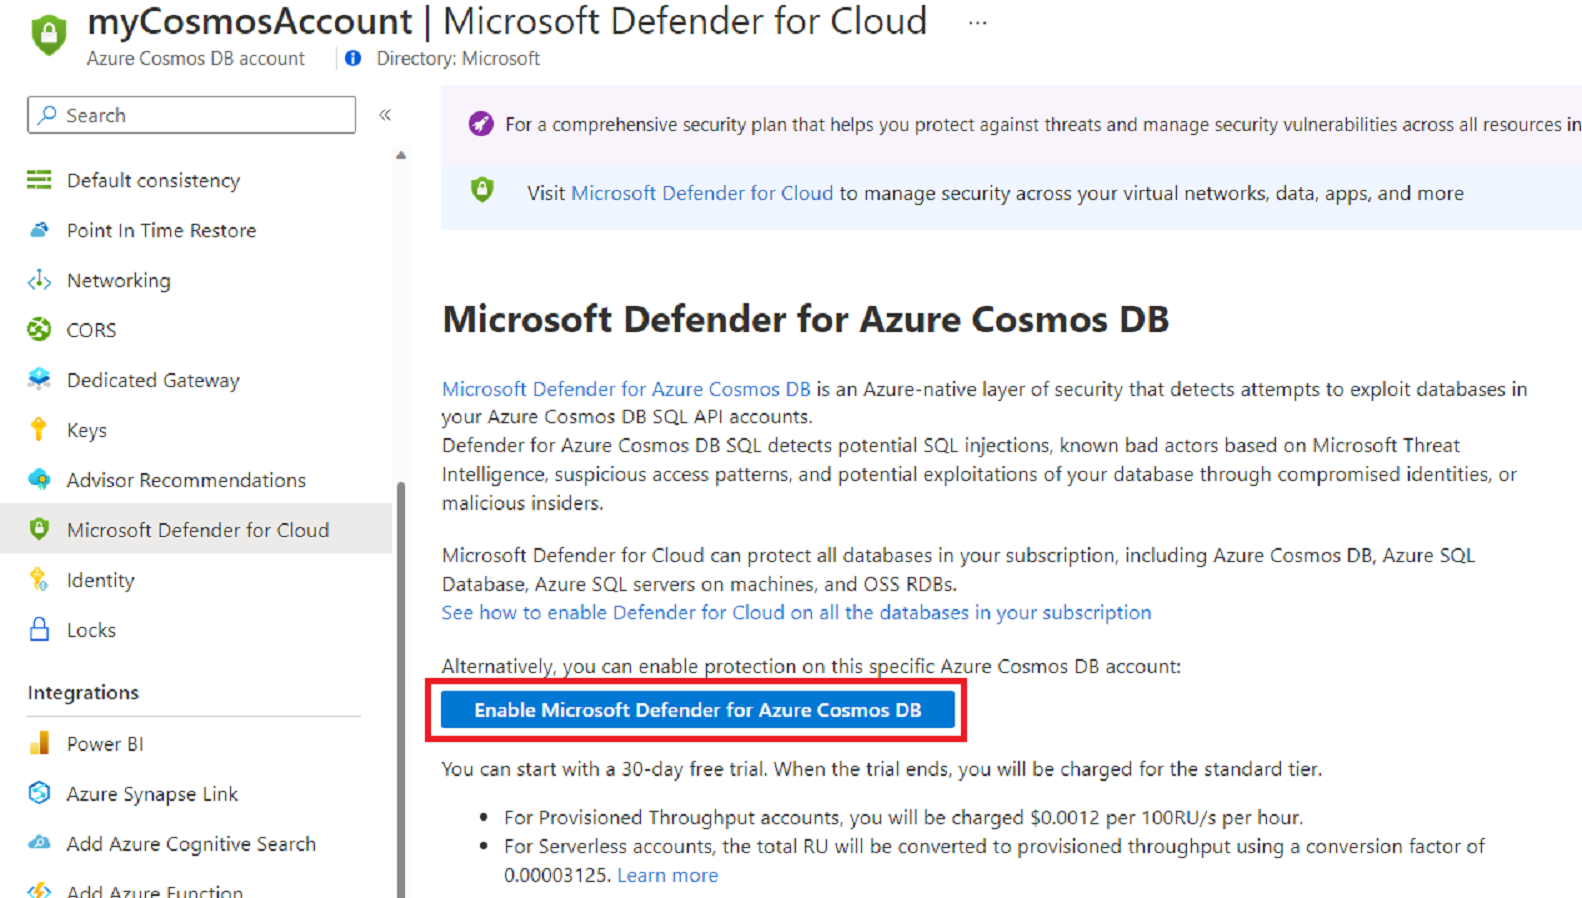 屏幕截图显示了用于在指定的 Azure Cosmos DB 帐户中启用 Microsoft Defender for Azure Cosmos DB 的选项。